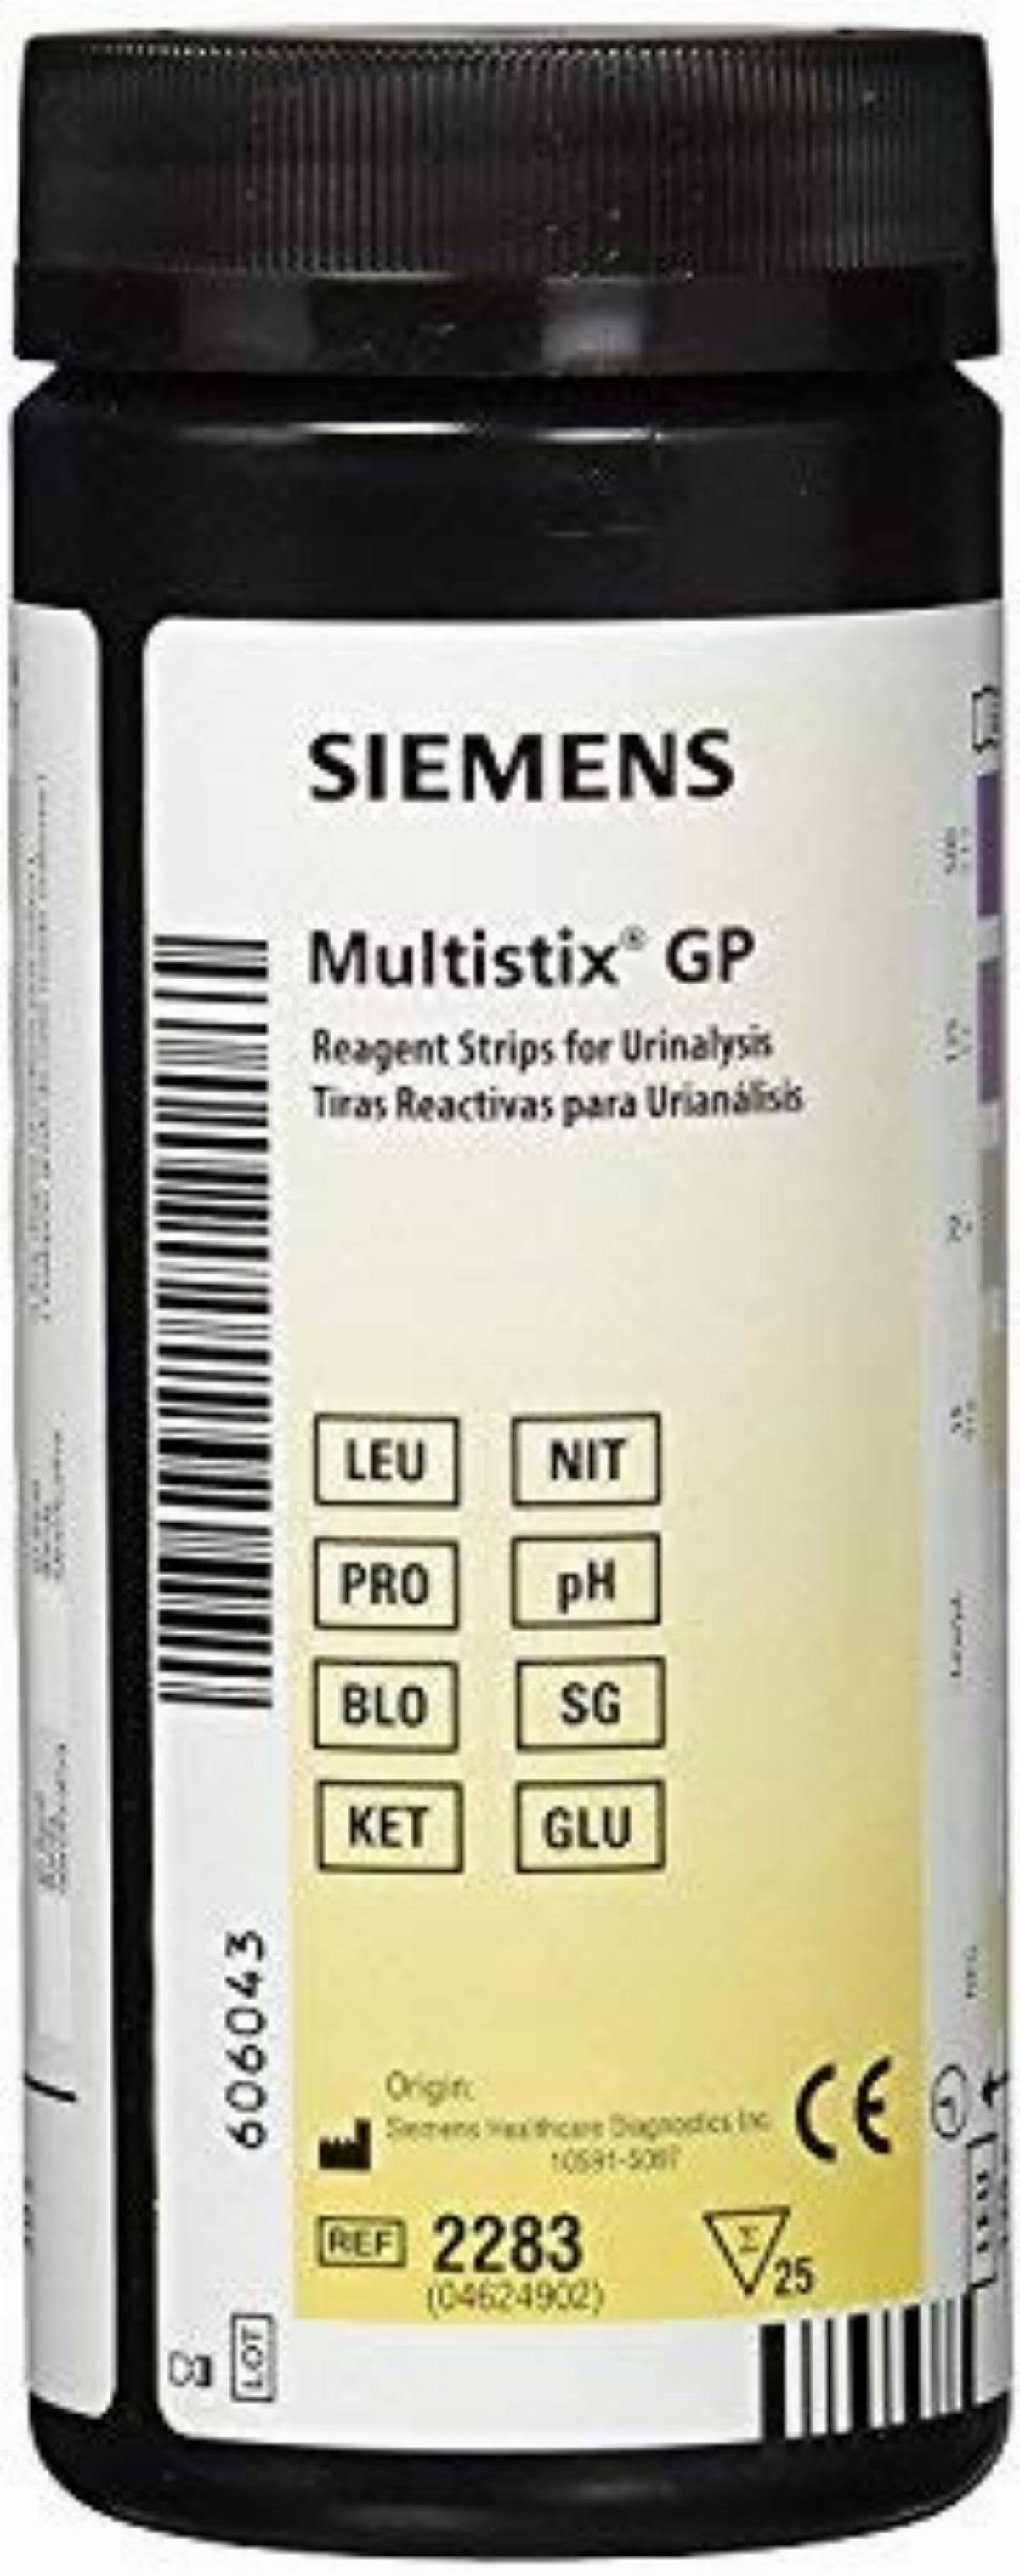 Multistix GP Reagent Urinalysis Test Strips